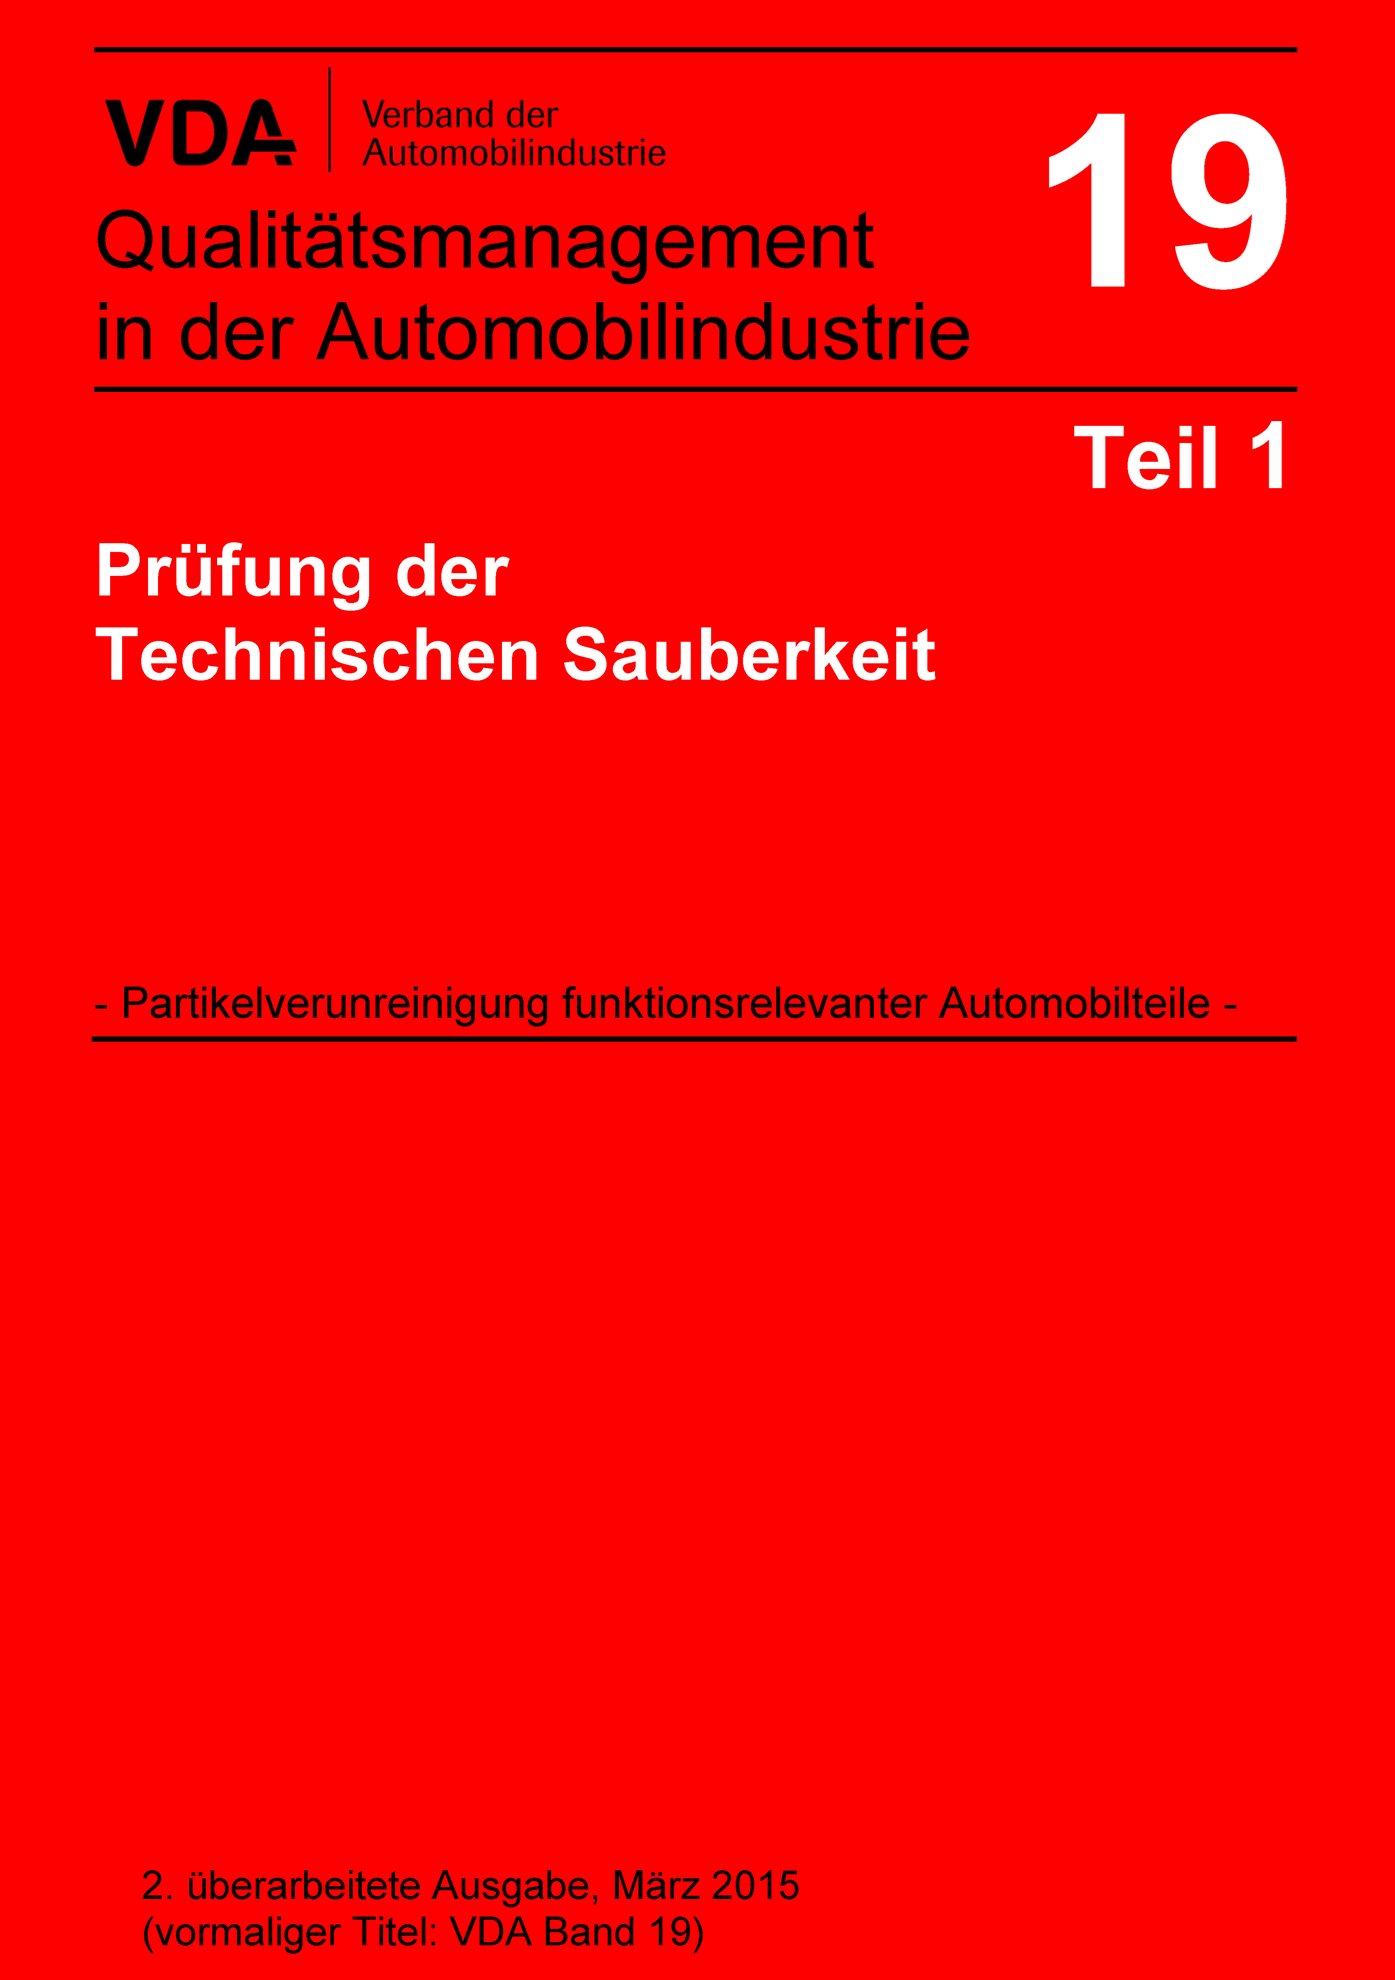 Publications  VDA Band 19 Teil 1 Prüfung der Technischen Sauberkeit - Partikelverunreinigung funktionsrelevanter Automobilteile / 2. überarbeitete Ausgabe, März 2015 (vormaliger Titel VDA Band 19) 1.3.2015 preview